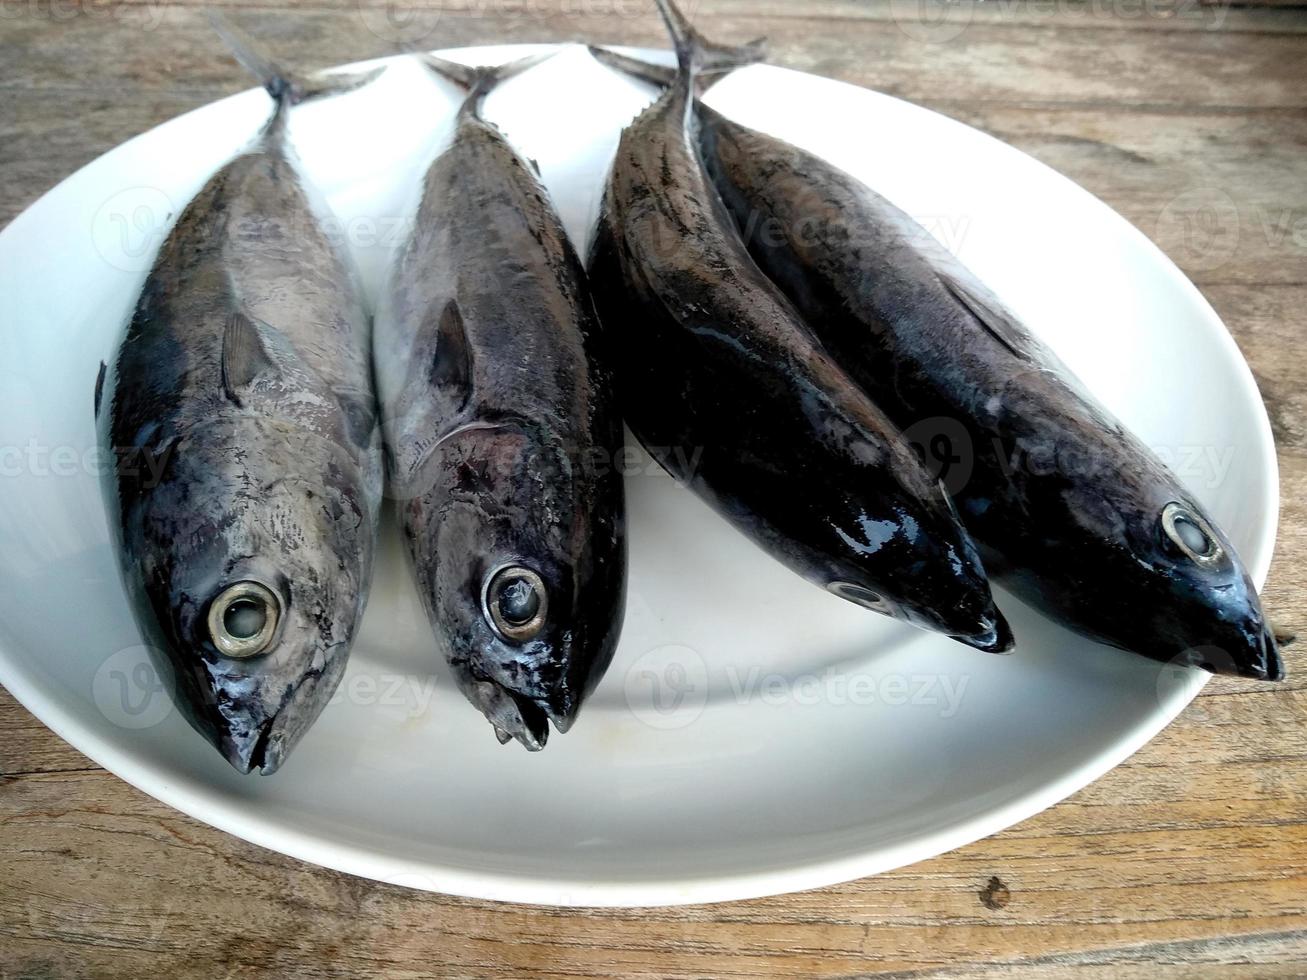 pescado fresco en el plato y la mesa. comida culinaria indonesia foto